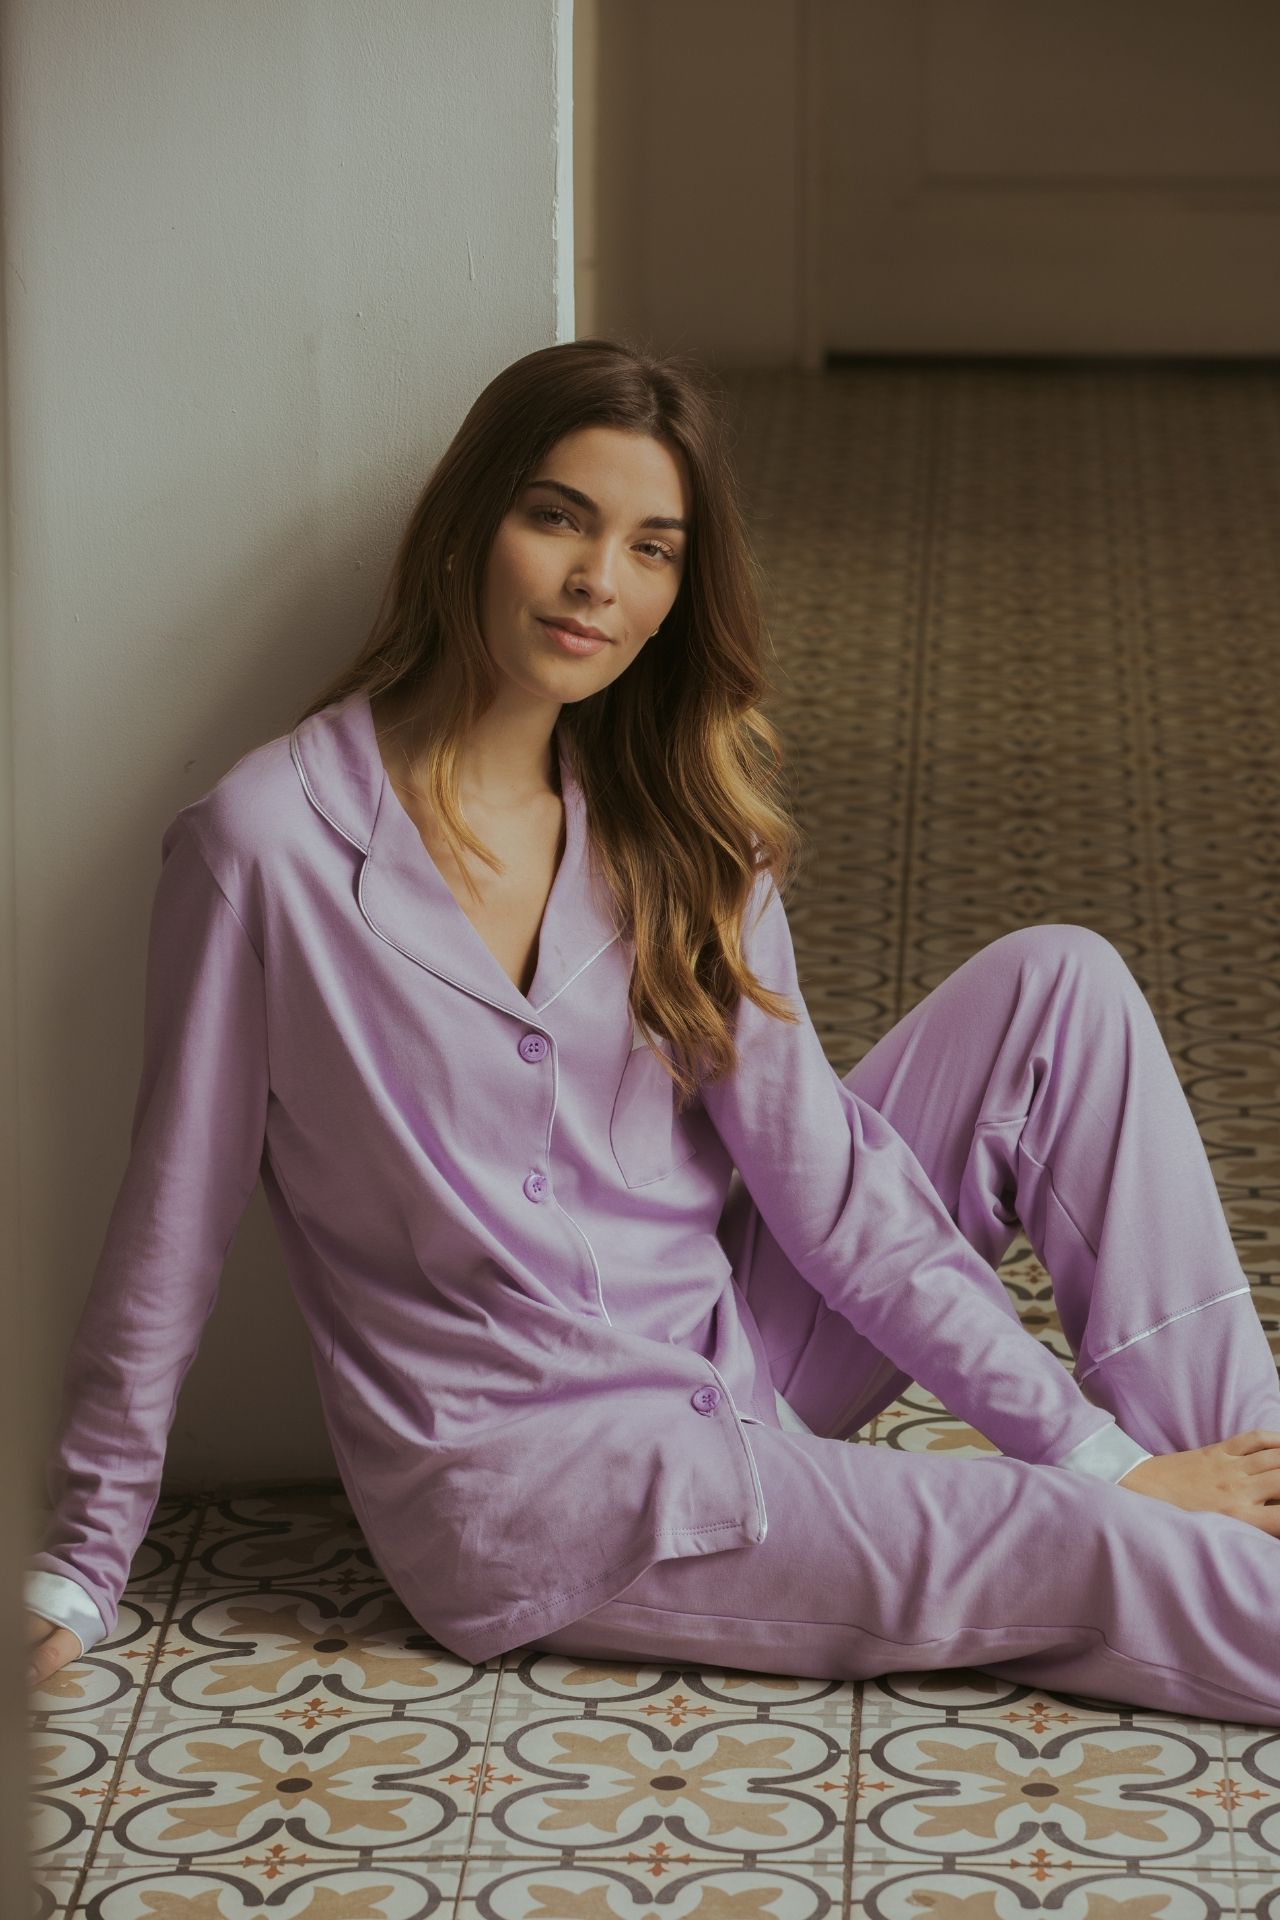 ¡Best-seller! Pijama de algodón pima premium con detalles en seda. Cuidados: no usar secadora, lavar con agua fria. La correa de seda es removible.
